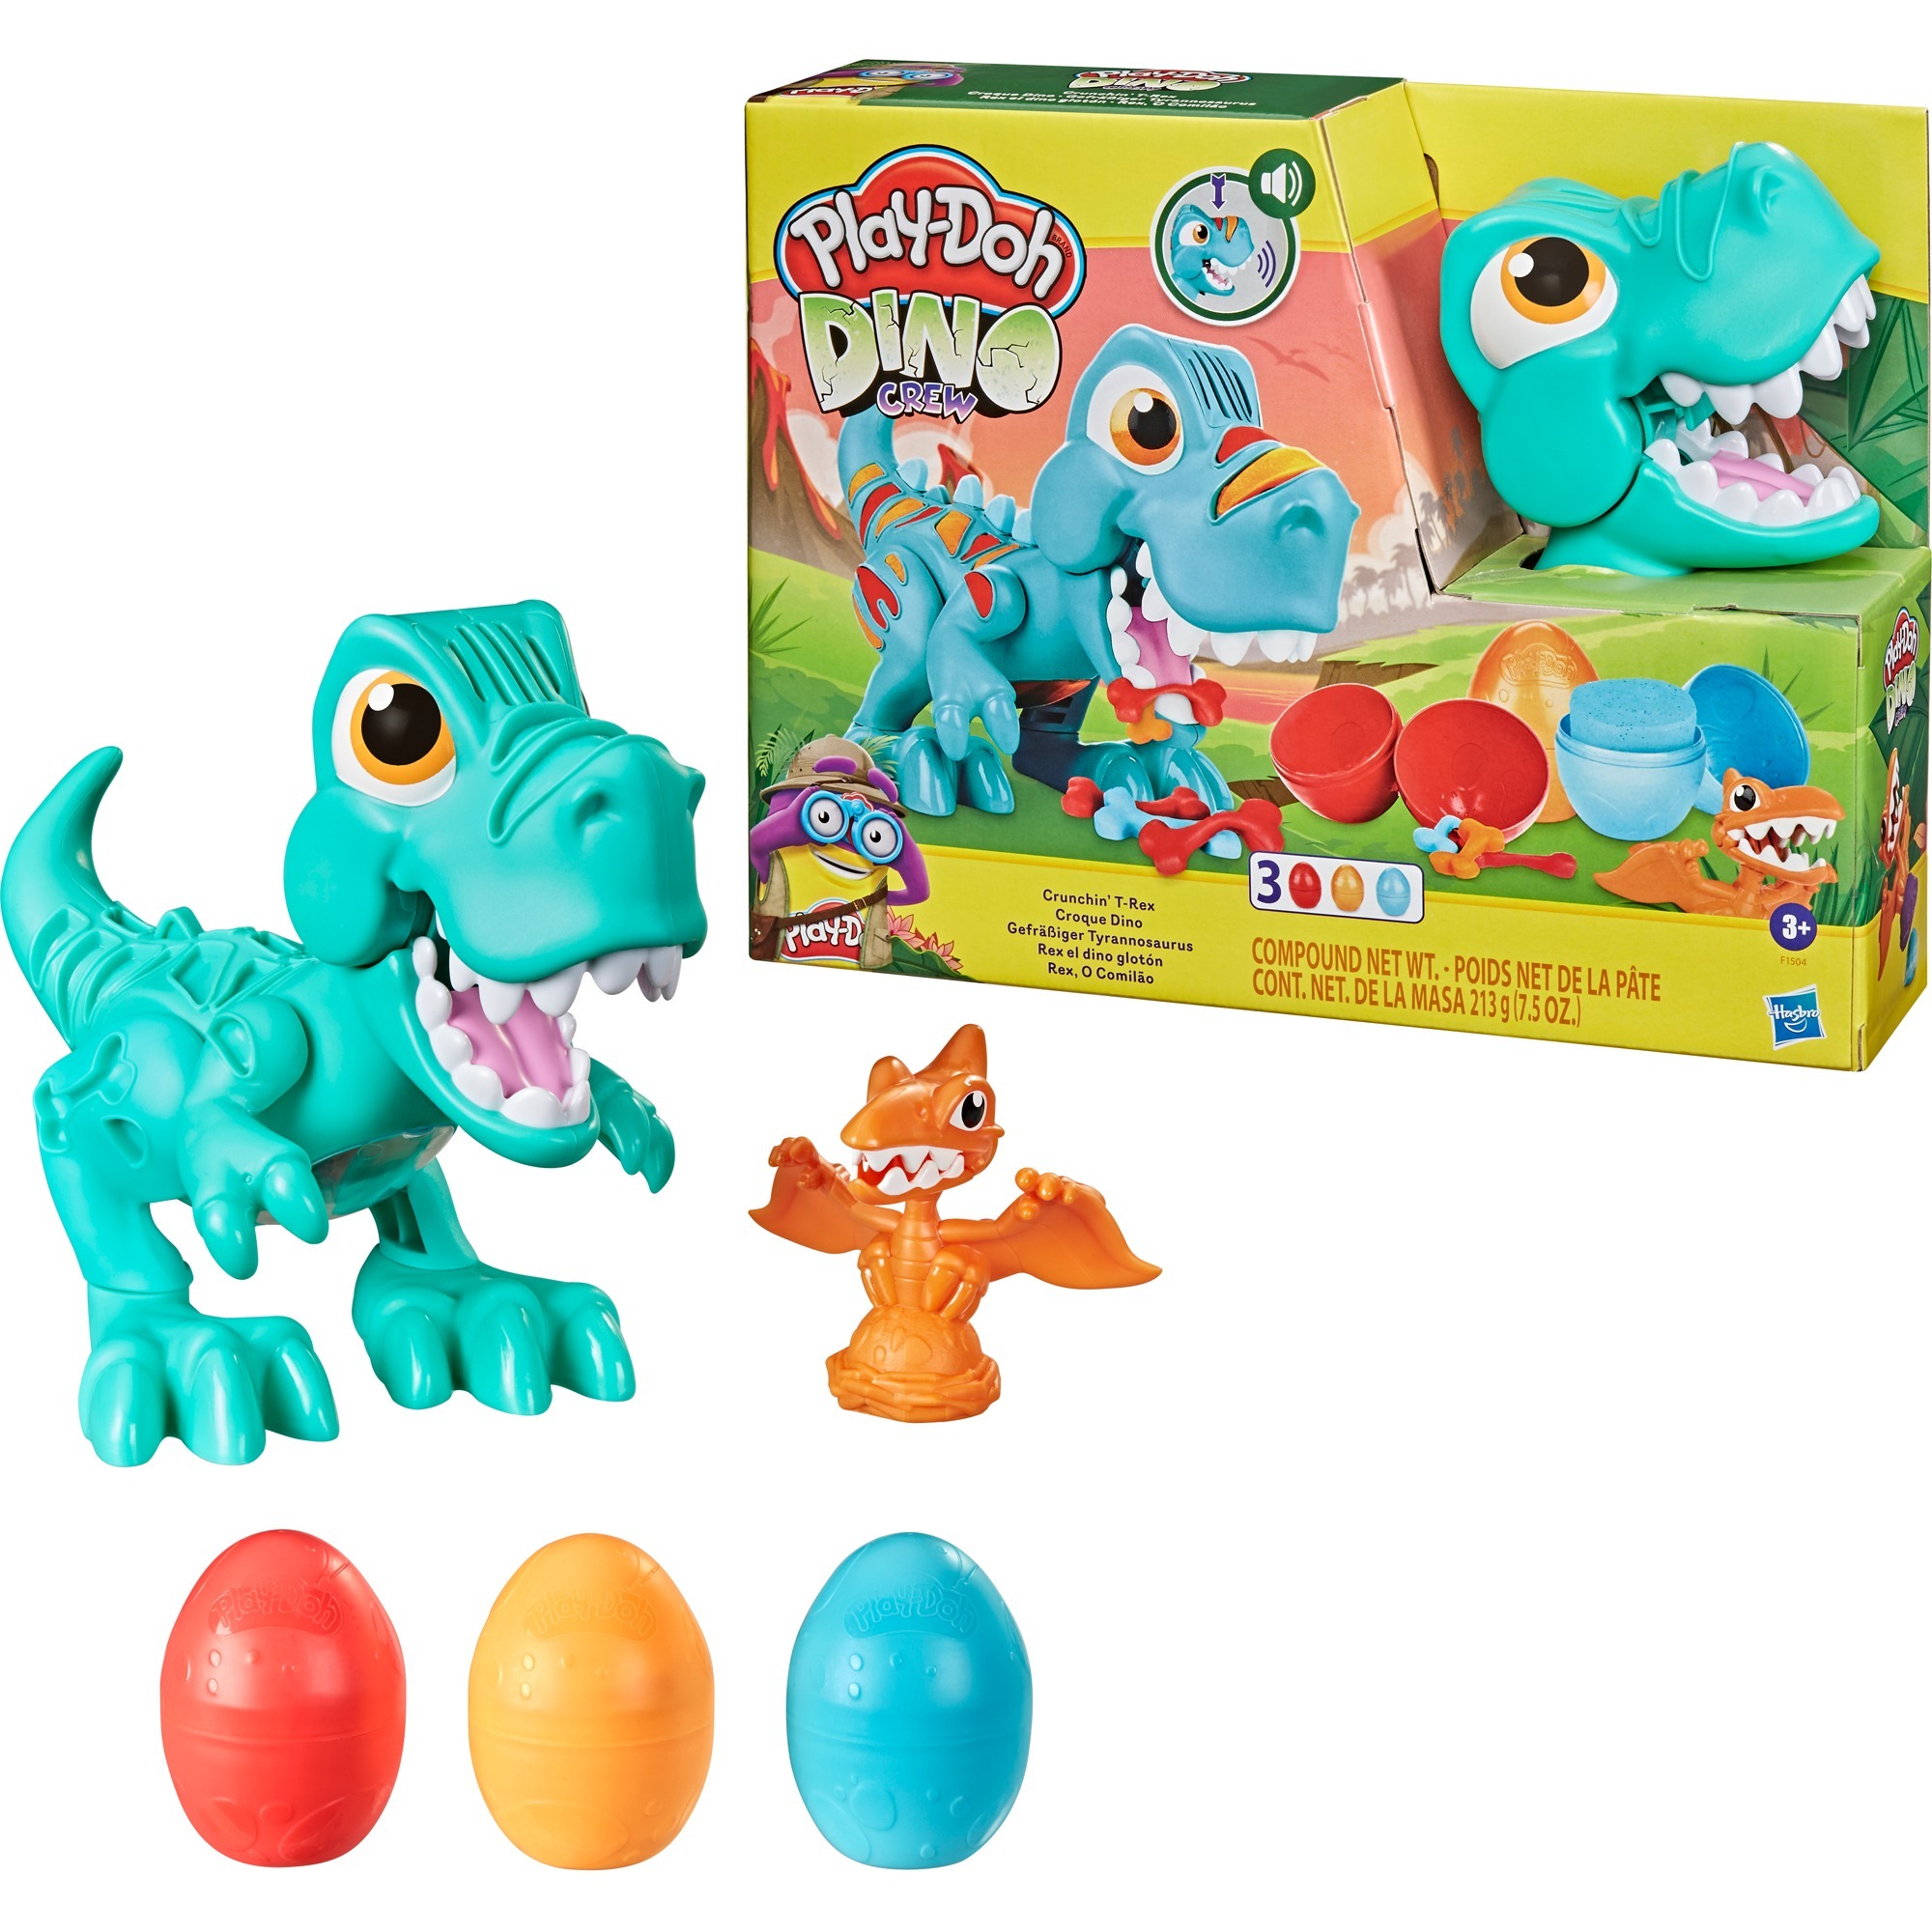 Image of Alternate - Play-Doh Dino Crew Gefräßiger Tyrannosaurus, Kneten online einkaufen bei Alternate